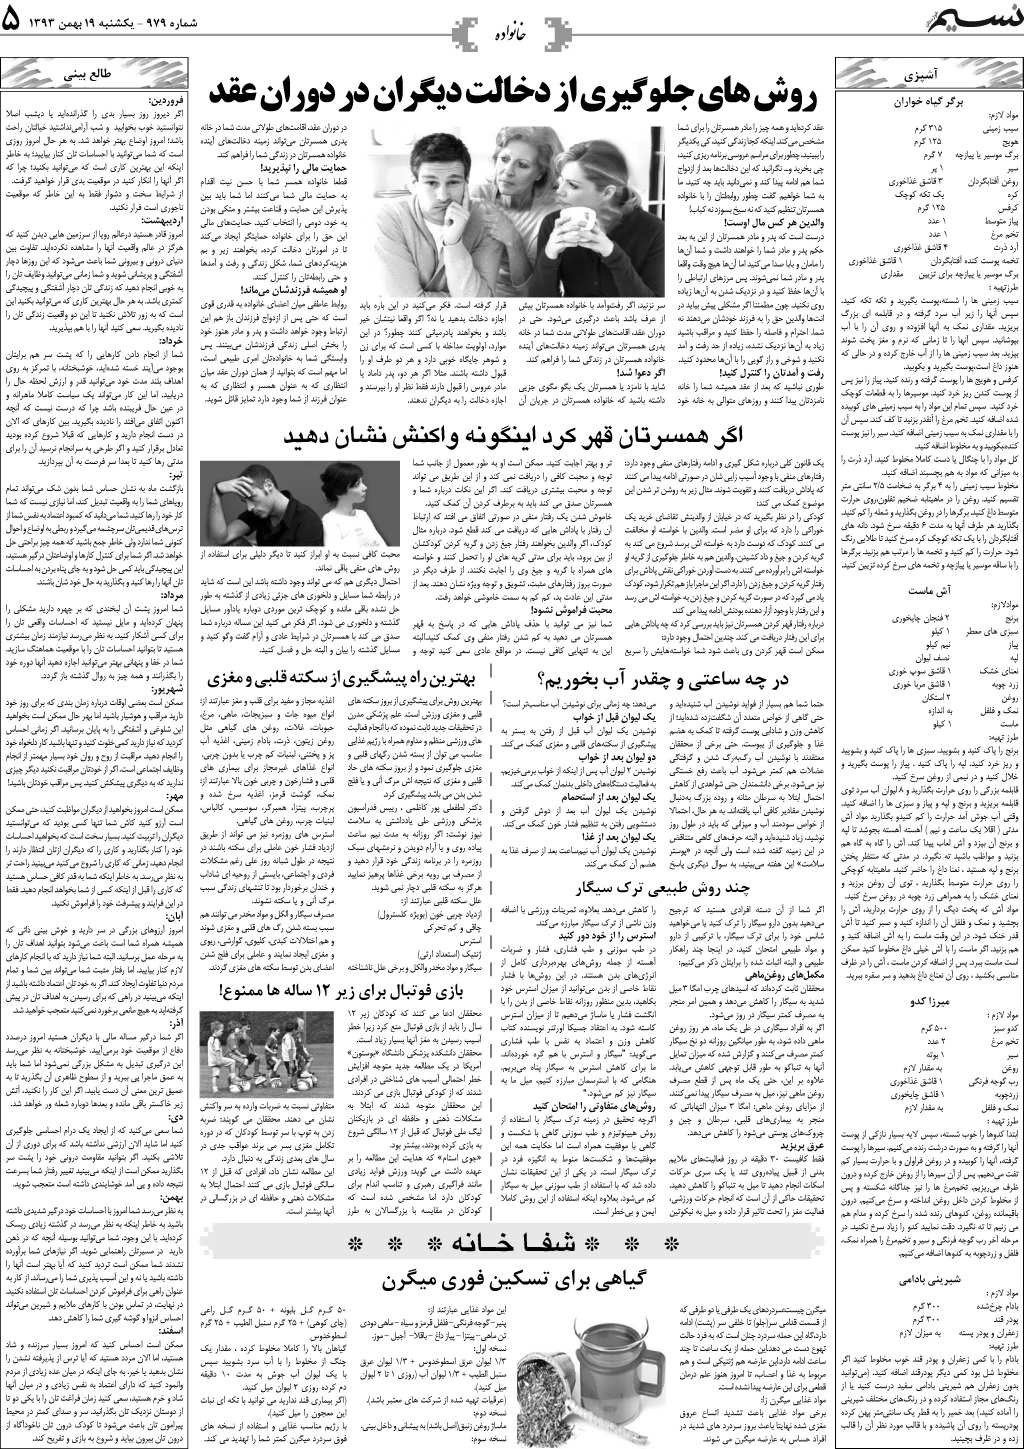 صفحه خانواده روزنامه نسیم شماره 979